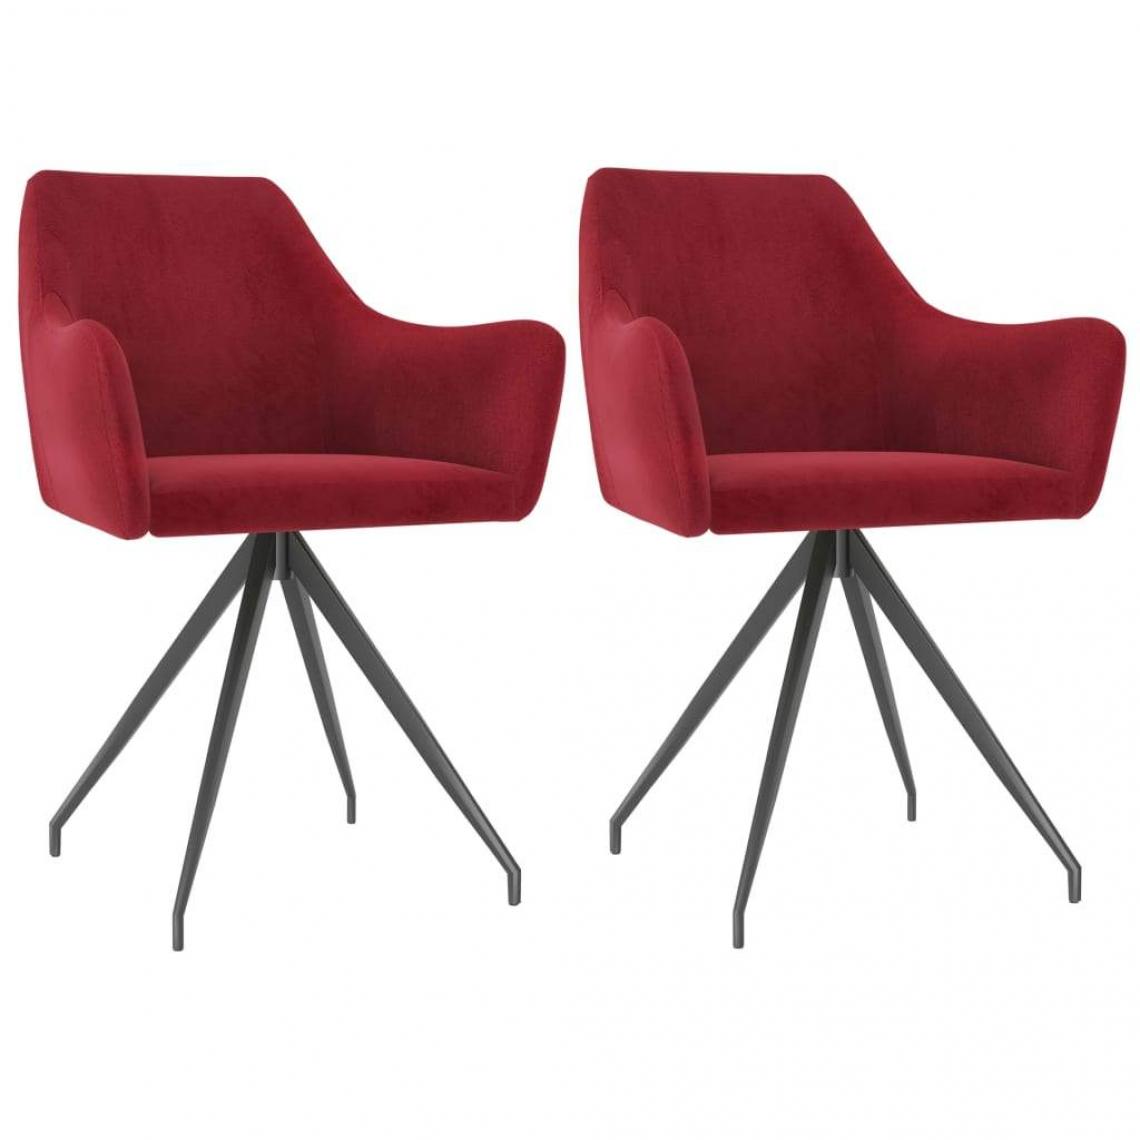 Decoshop26 - Lot de 2 chaises de salle à manger cuisine design moderne velours rouge bordeaux CDS021015 - Chaises